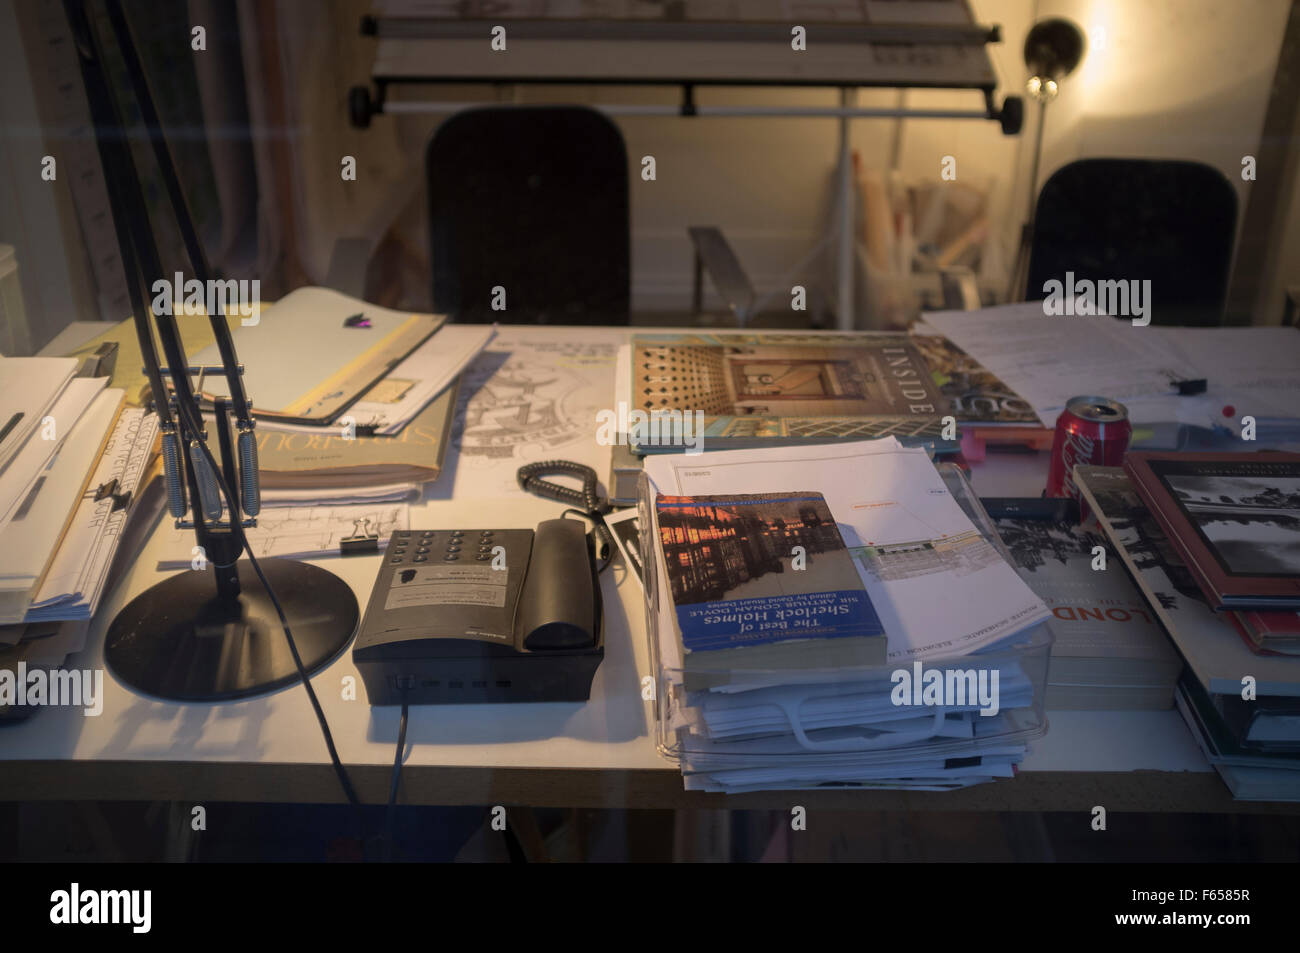 Ein überfüllter Schreibtisch von einem Schreibtisch Licht beleuchtet  Stockfotografie - Alamy